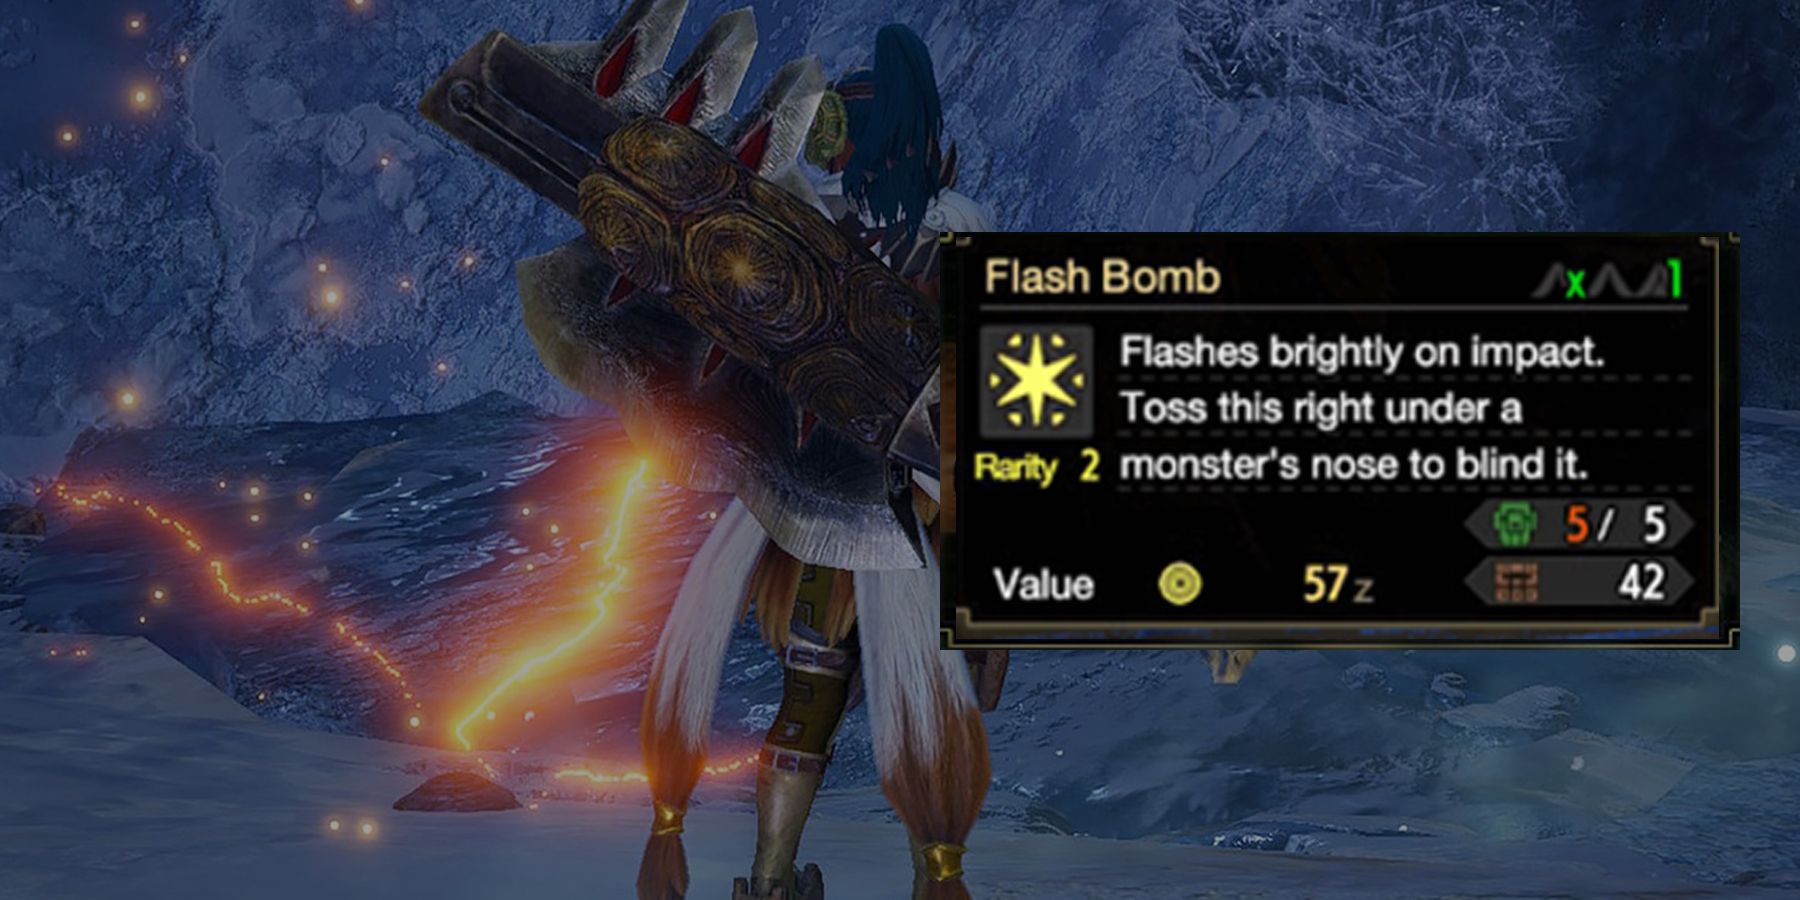 Flash Bomb